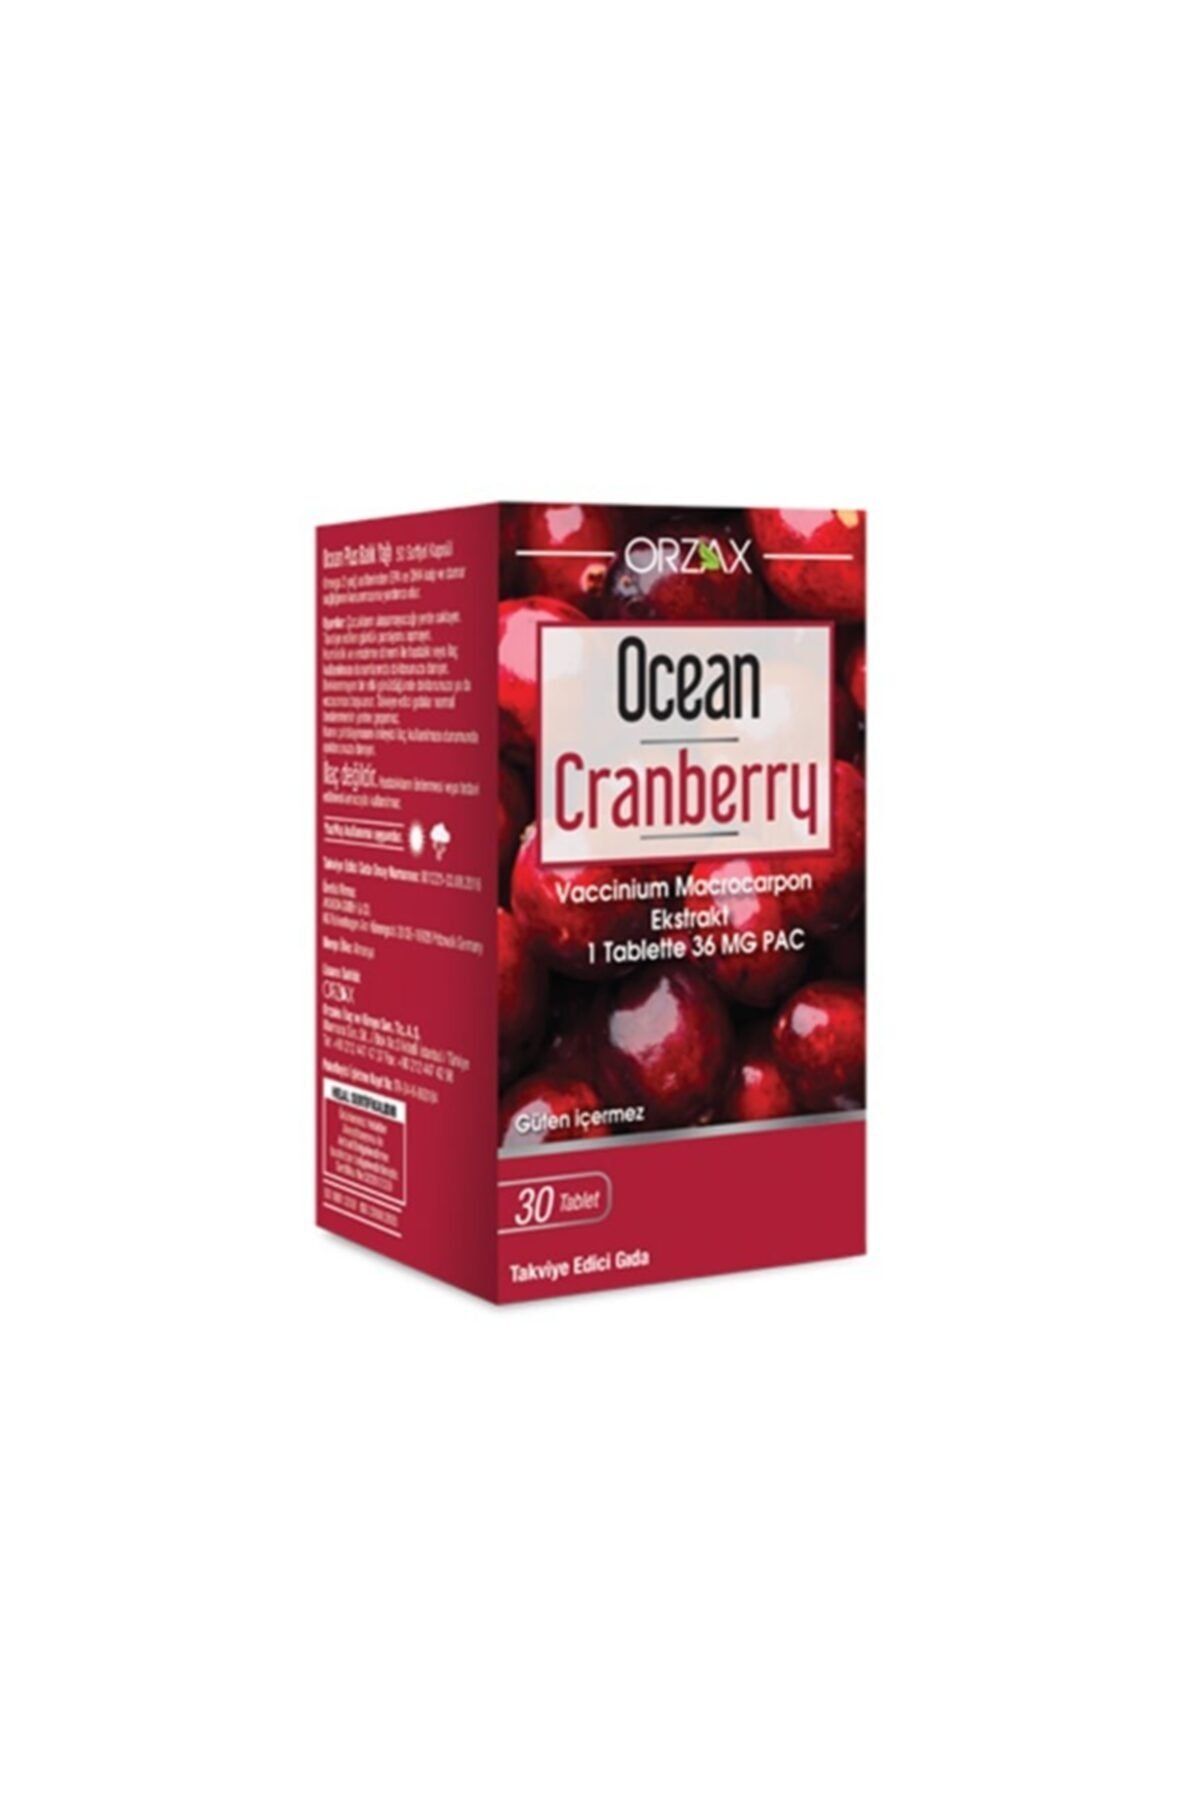 Ocean Ocean Cranberry Turna Yemişi Ekstresi 36 mg Pac 30 Tablet